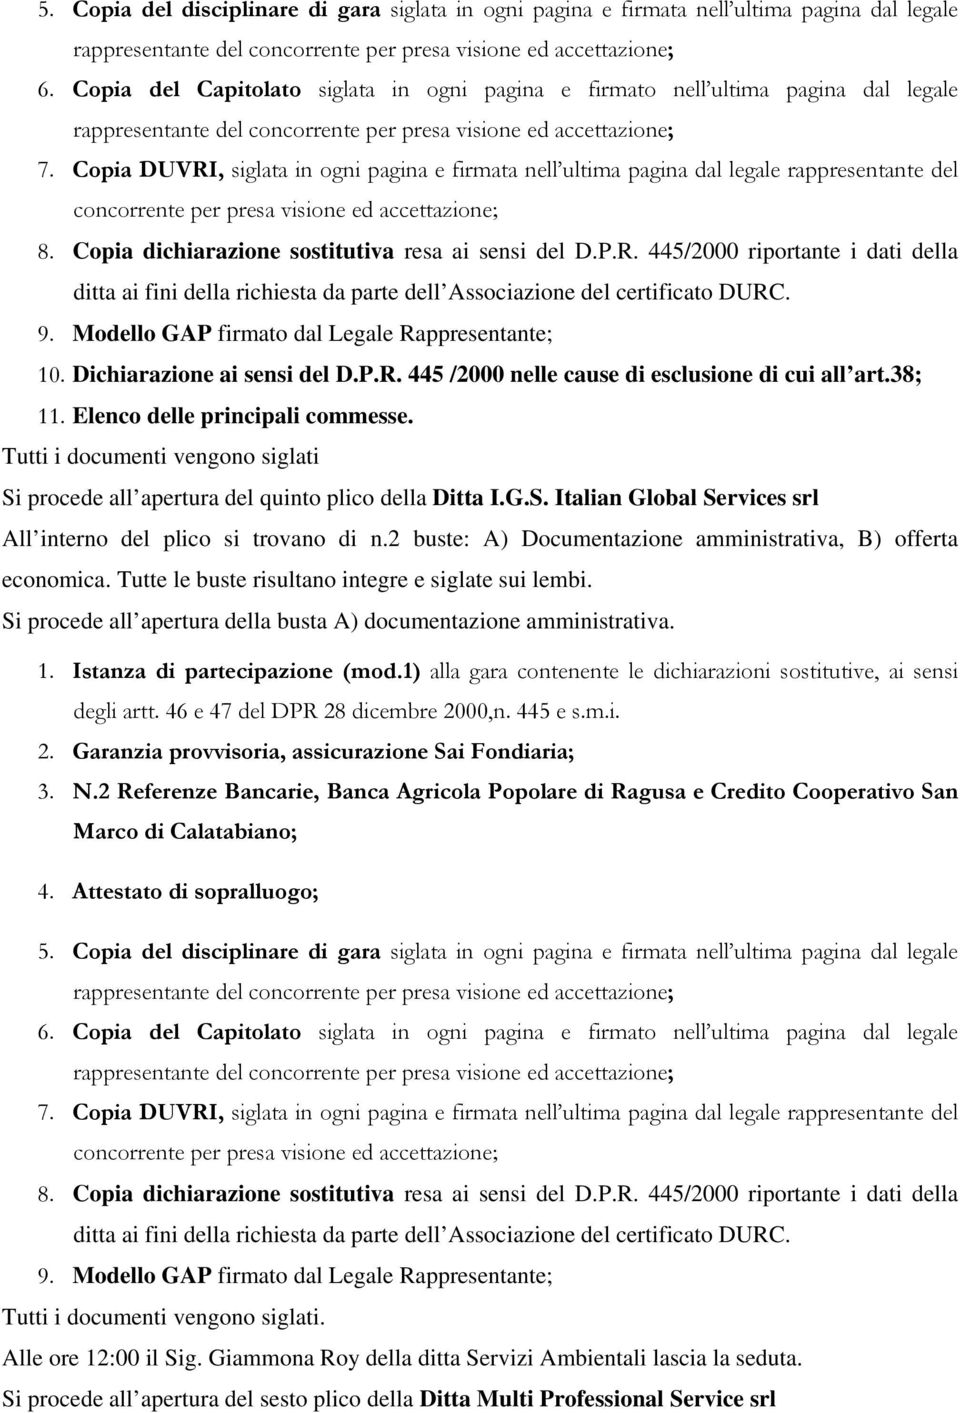 Garanzia provvisoria, assicurazione Sai Fondiaria; 3. N.